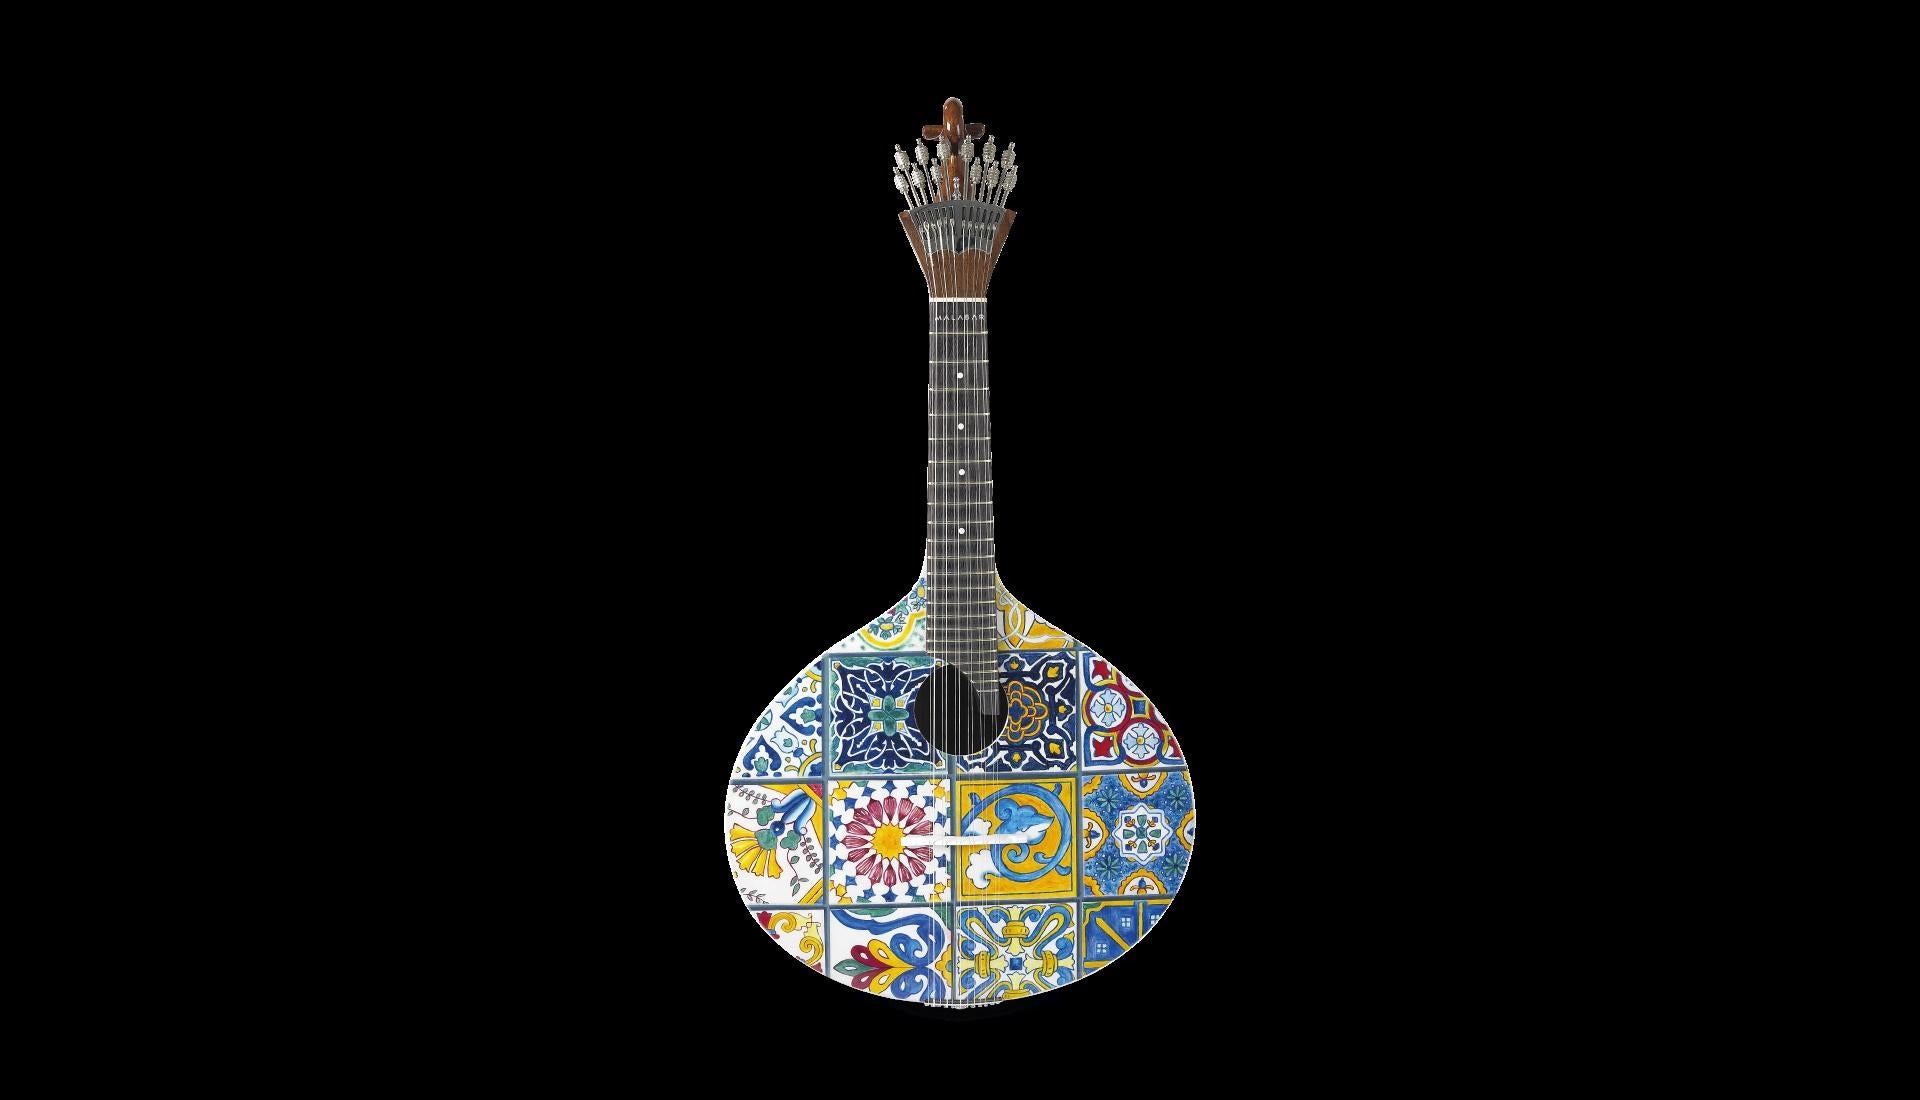 Die portugiesische Gitarre Azulejo I ist eine Hommage an den künstlerischen Ausdruck einer Nation. Die Geschichte des Volkes ist in den originalen, in kontrastreichen Farben bemalten Keramikstücken wiedergegeben, die die Wände des Küstenlandes